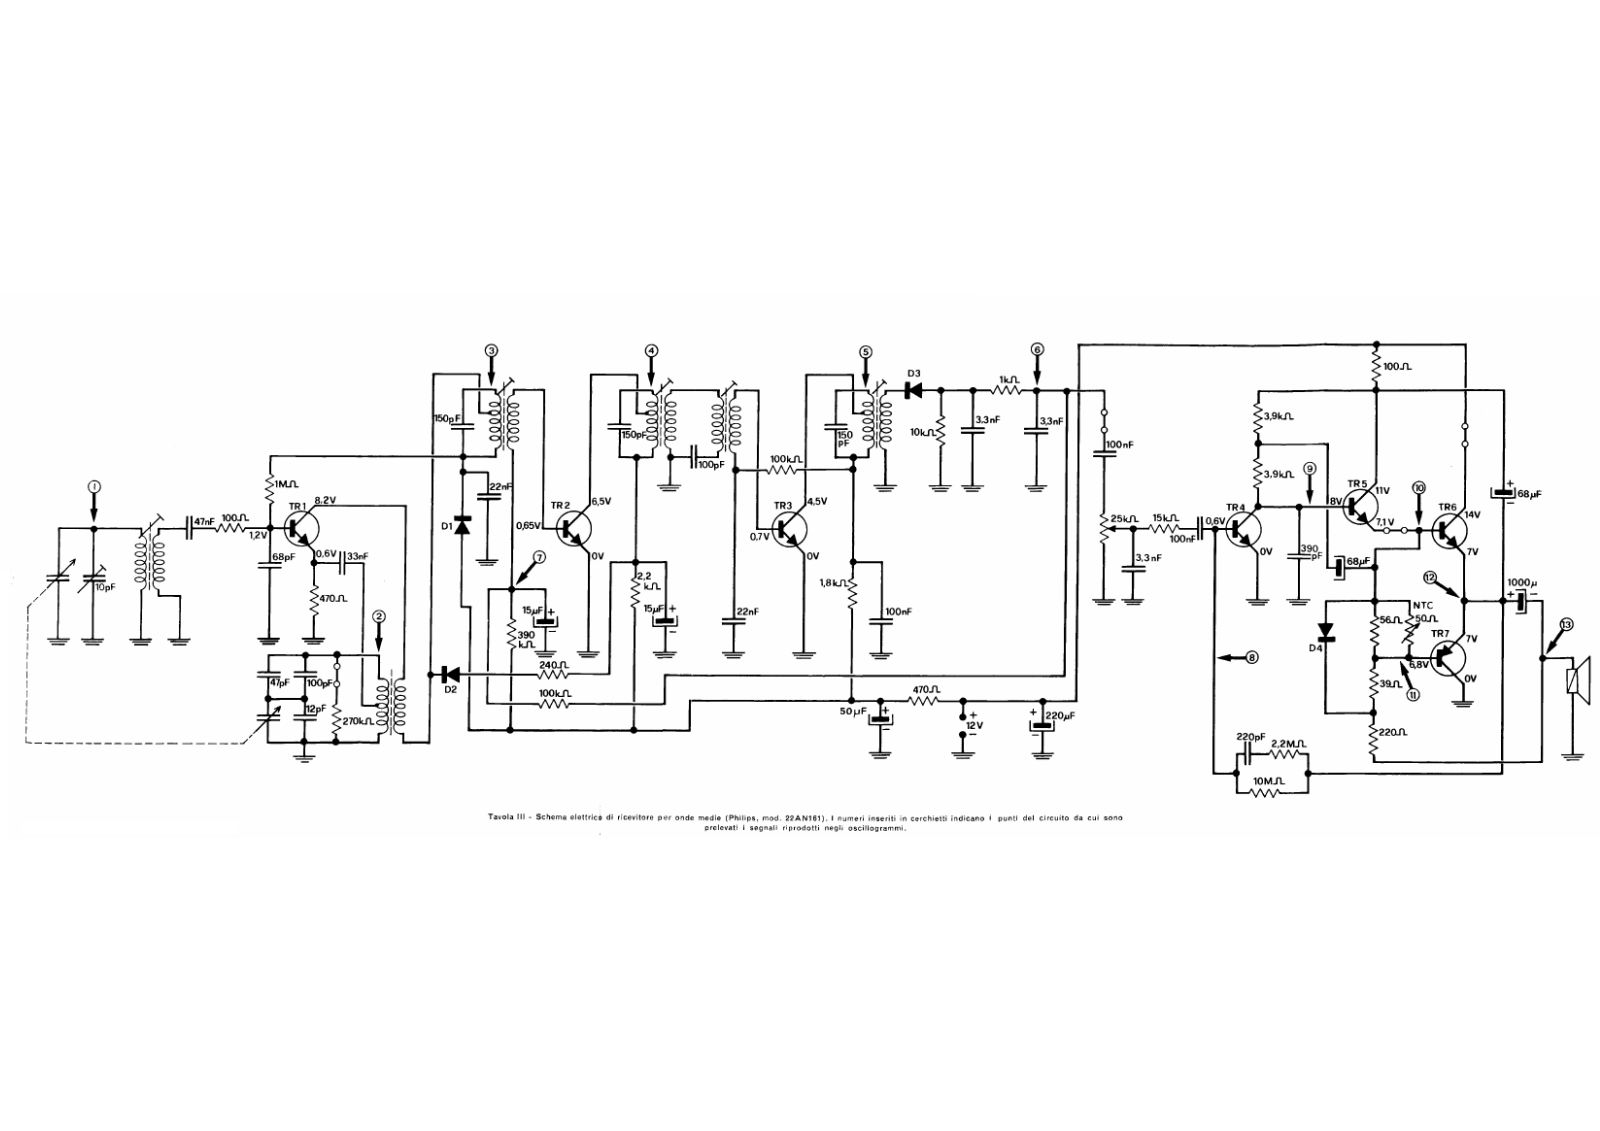 Philips 22an161 schematic